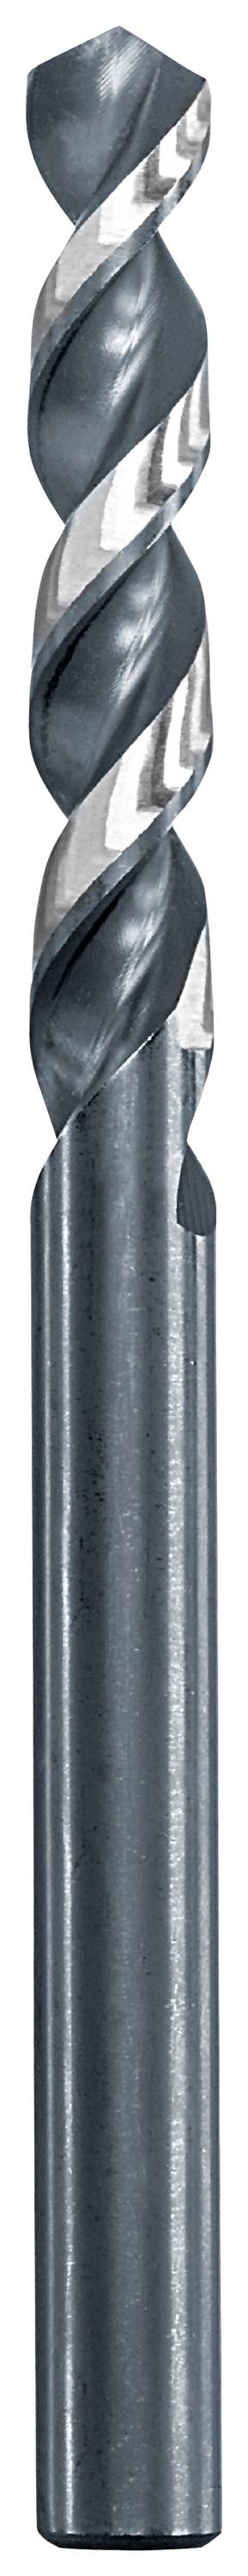 KWB 258630 Metall-Spiralbohrer 3 mm Gesamtlänge 61 mm 1 St.